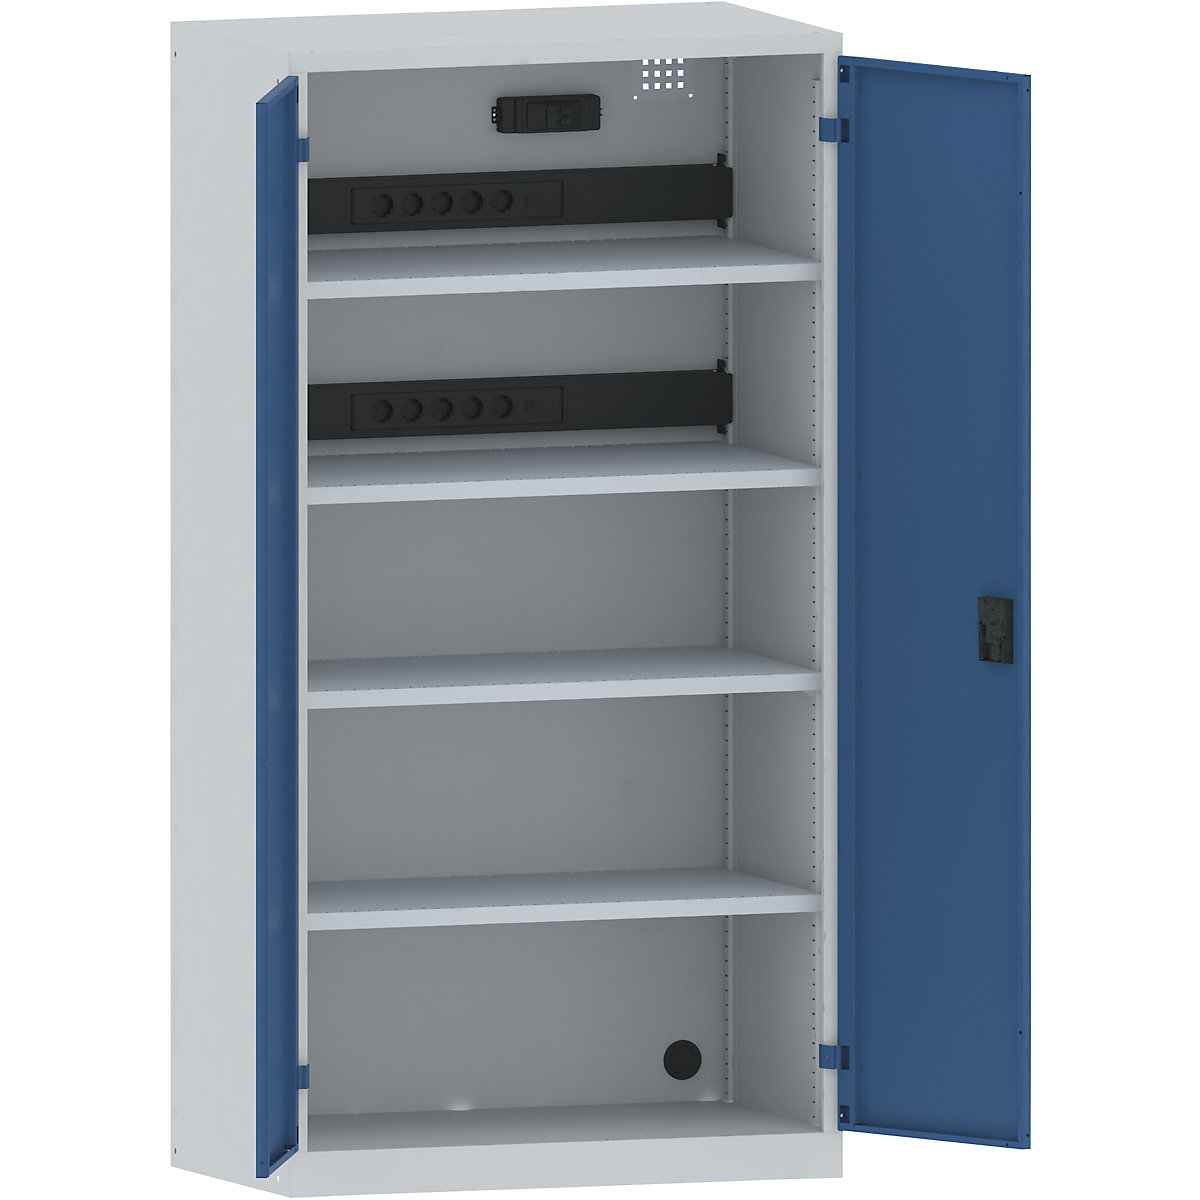 LISTA – Skříň pro nabíjení akumulátorů, 4 police, plné plechové dveře, 2 zásuvkové lišty na zadní straně se spínačem FI/LS, šedá / modrá